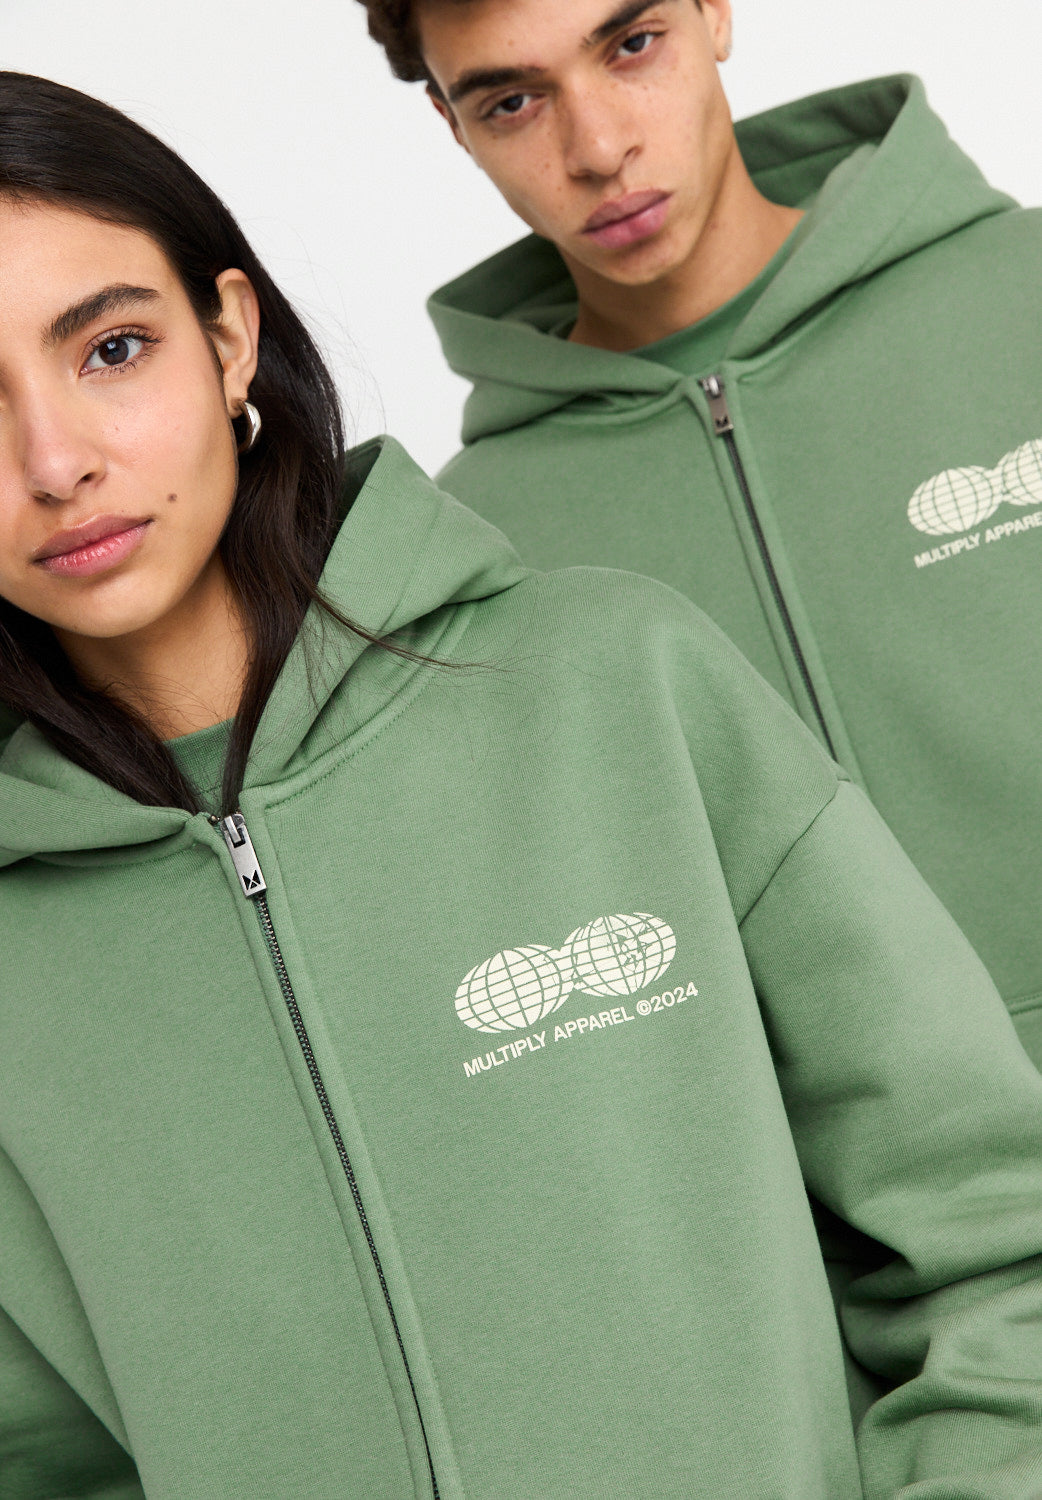 Oversize zip hoodie TWO WORLDS Hedge Green